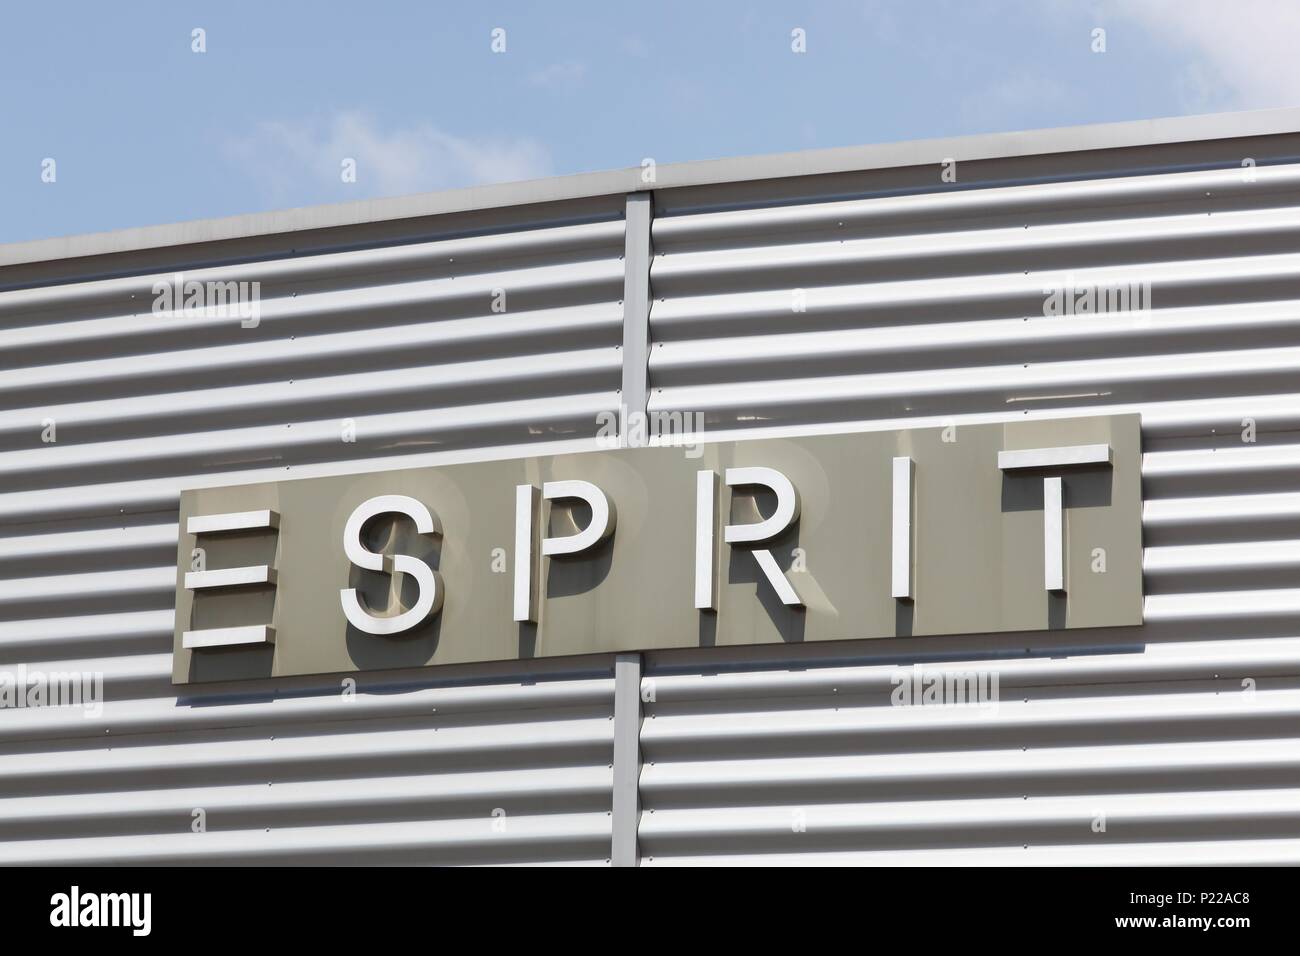 Saint Martin, Frankreich - 25. Juni 2017: Esprit Logo auf einer Fassade. Esprit ist ein Hersteller von Kleidung, Schuhe, Accessoires, Schmuck und Haushaltswaren Stockfoto